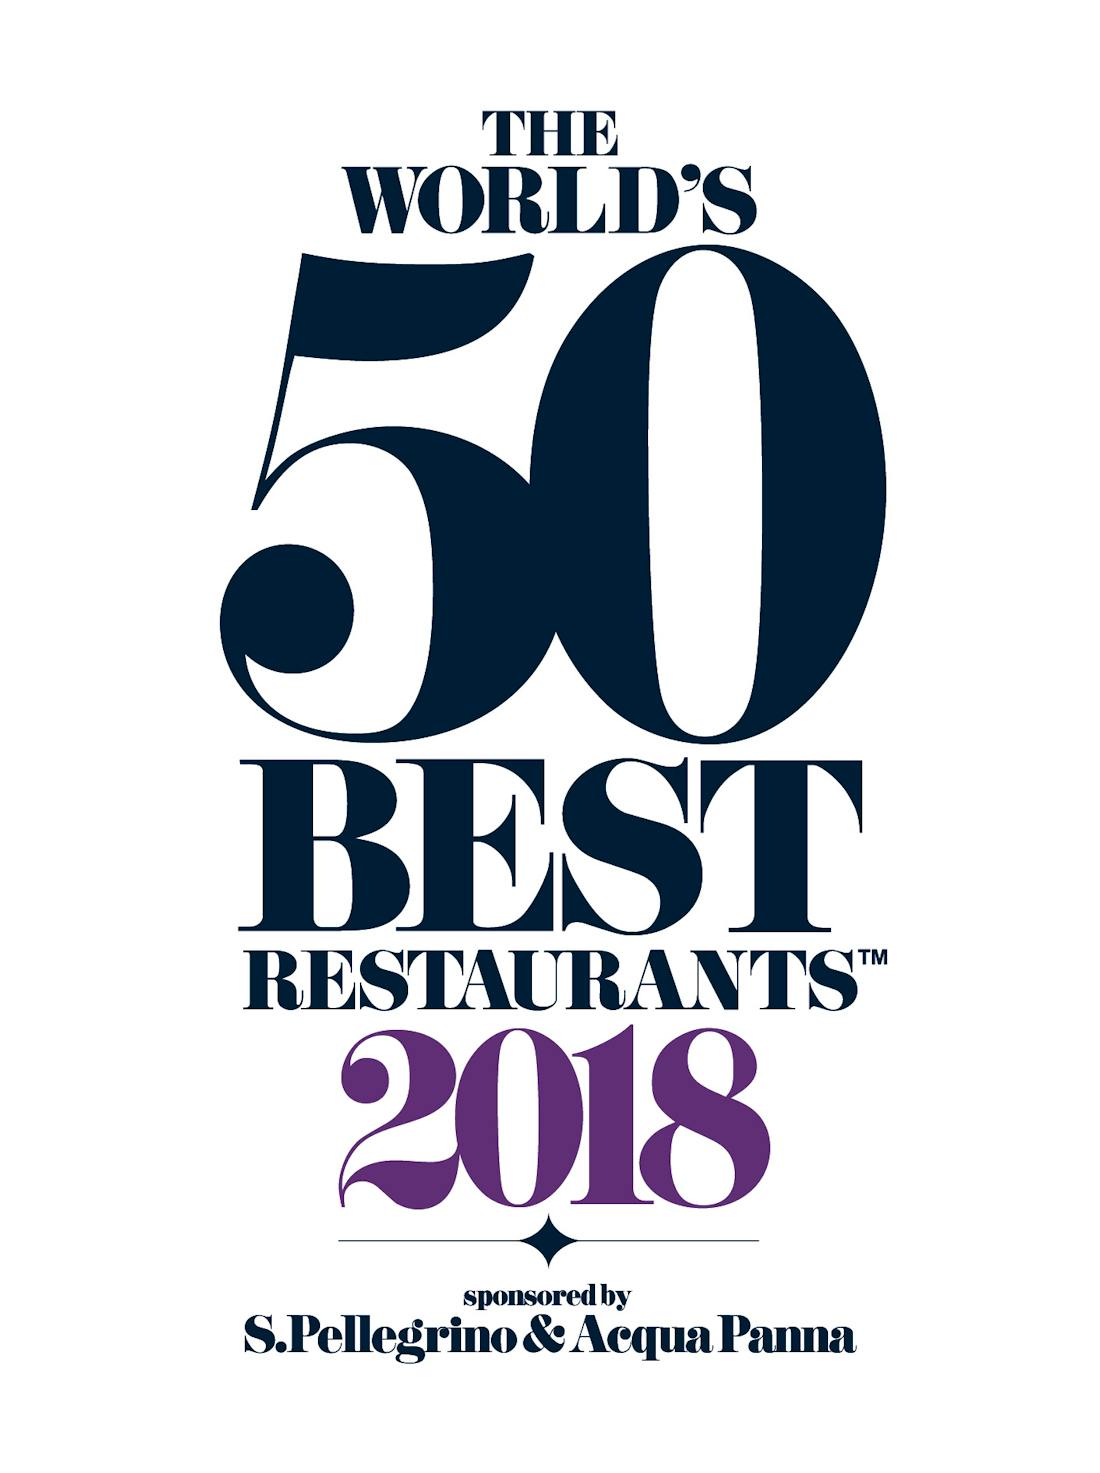 Dekton® by Cosentino offizieller Sponsor und Ausrüster von Arbeitsplatten bei der Verleihung der  „The World’s 50 Best Restaurants Awards 2018“